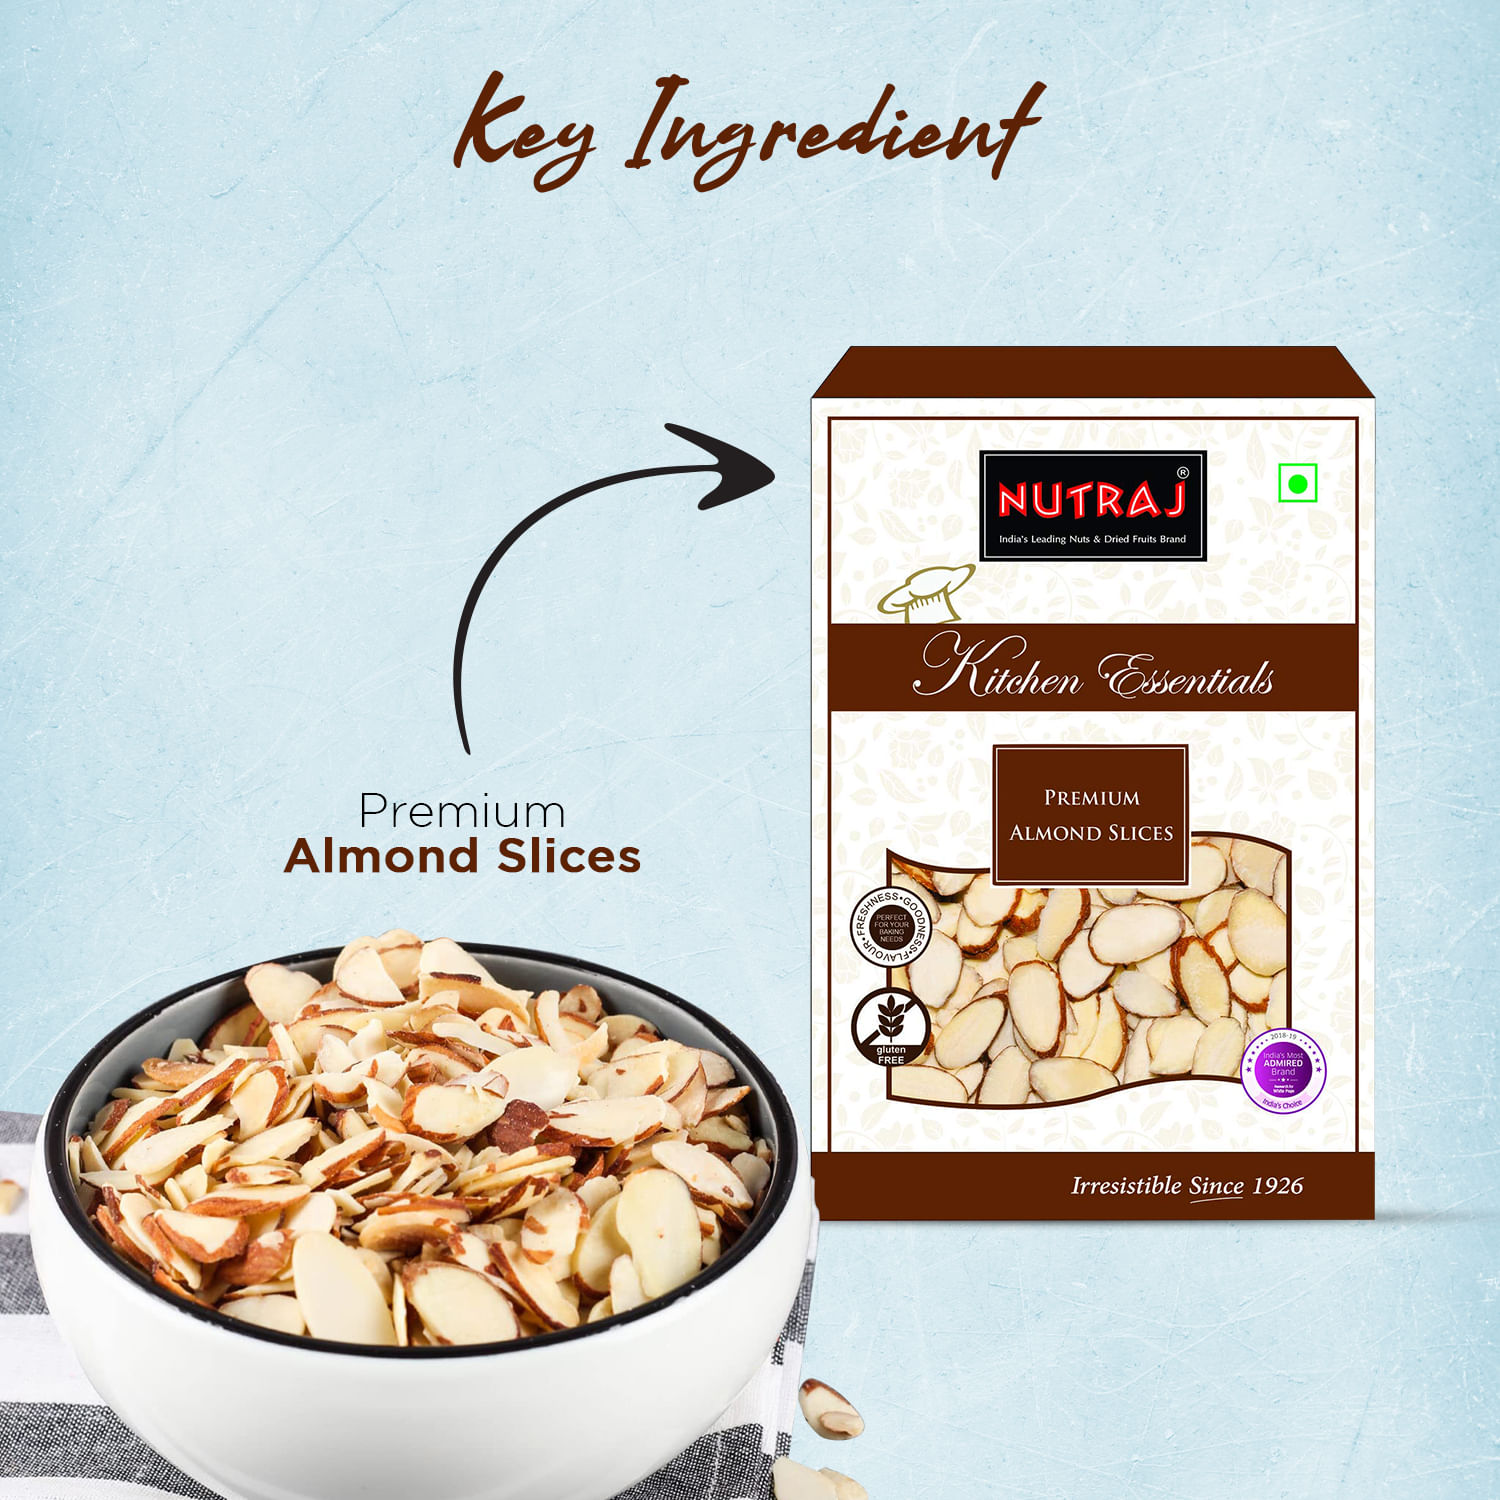 Nutraj Kitchen Essential Premium Almond Slices 200g